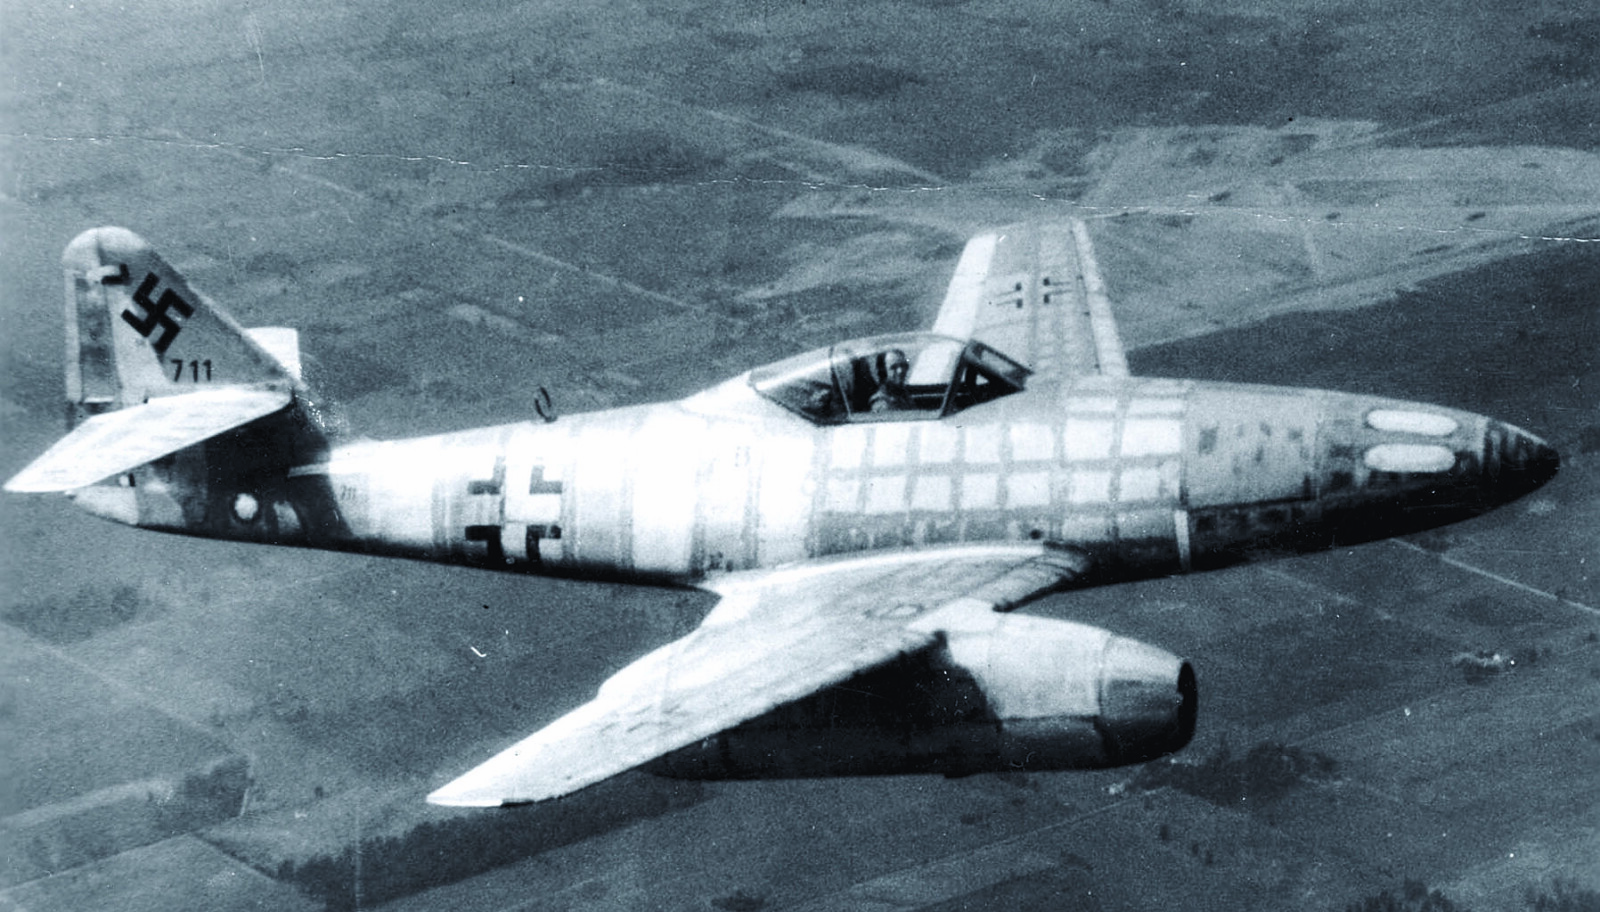 <b>OVERLEGEN FART:</b> Messer­schmitt Me 262 Schwalbe hadde en topp­fart rundt 870 km/t og var de allierte jagerflyene overlegen. Flyet på bildet skal være den ­første 262-maskinen som kom de allierte i hende. 